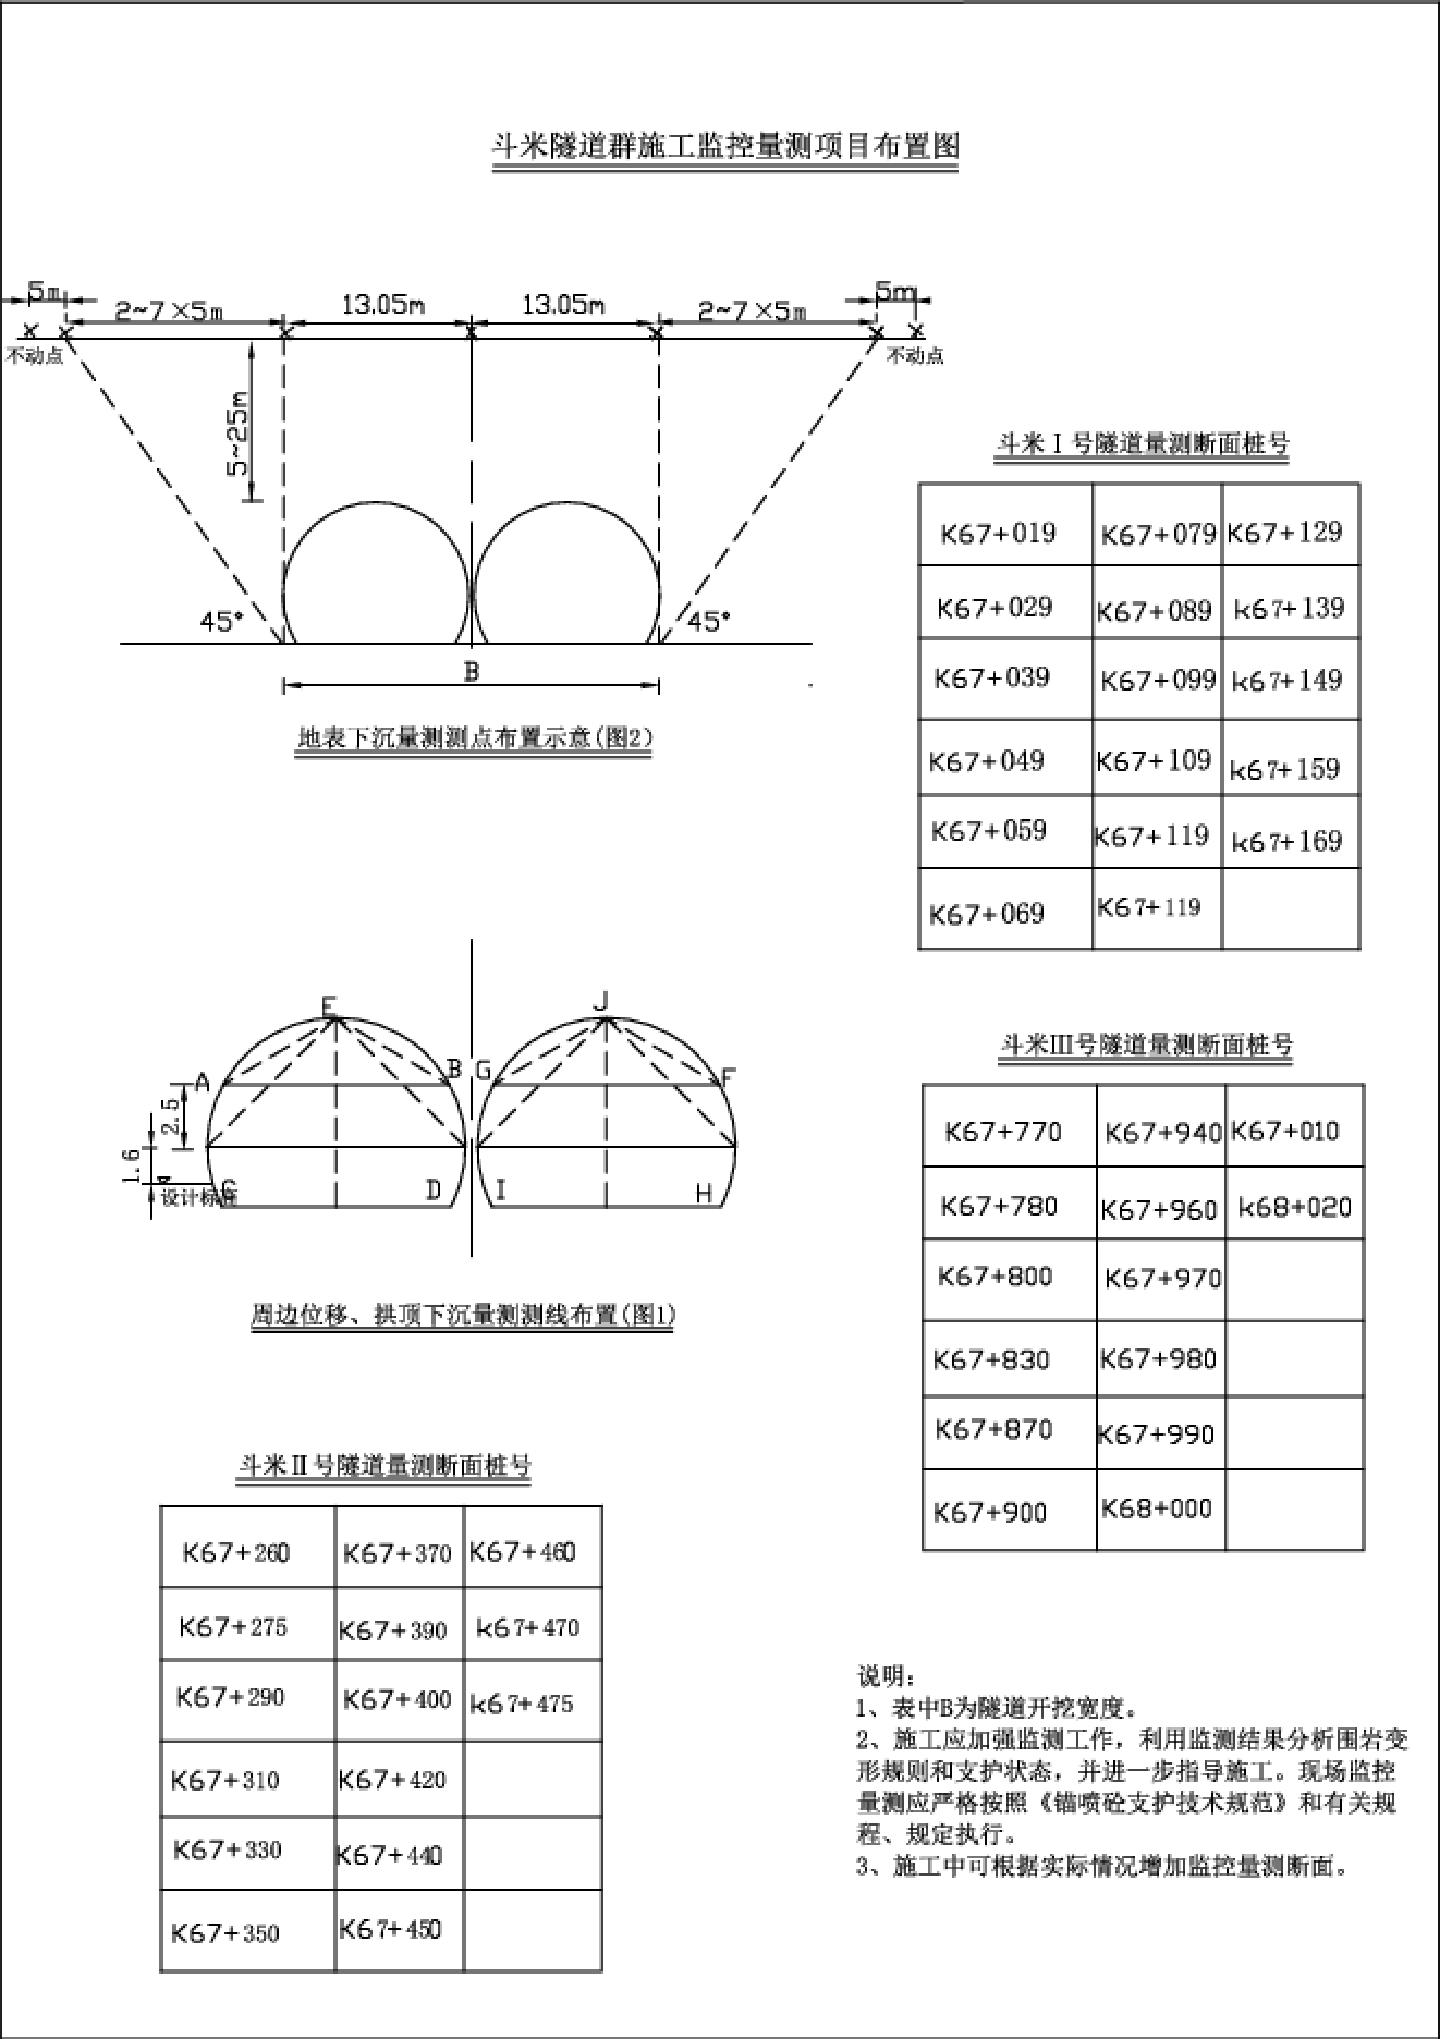 斗米隧道群施工监控量测项目布置图.DWG